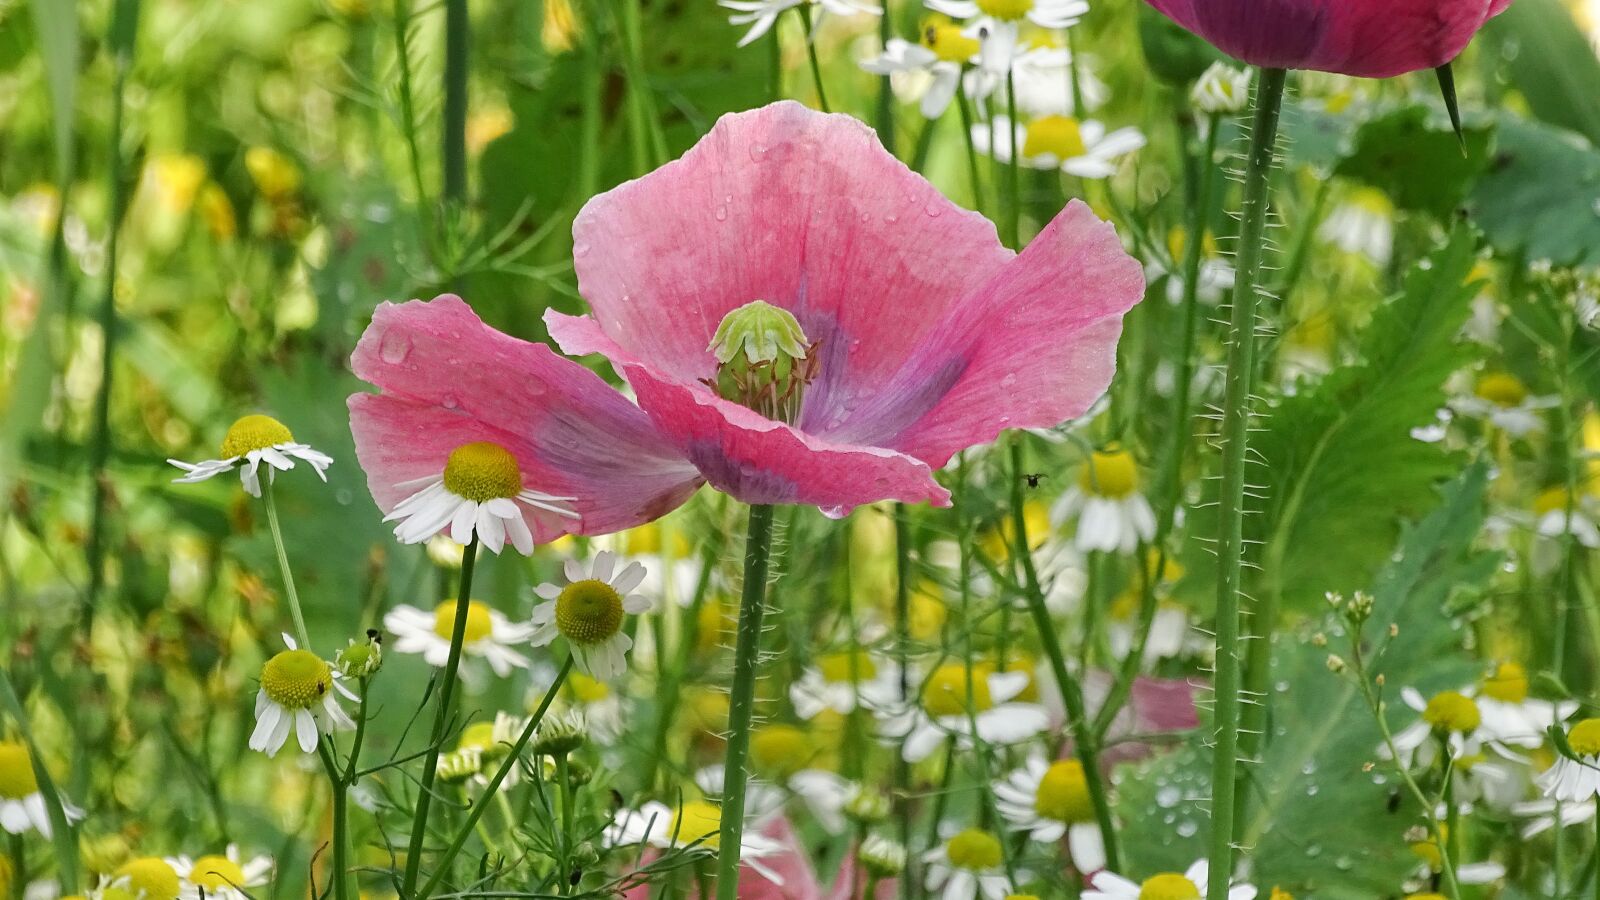 Sony Cyber-shot DSC-HX400V sample photo. Poppy flower, pink poppy photography